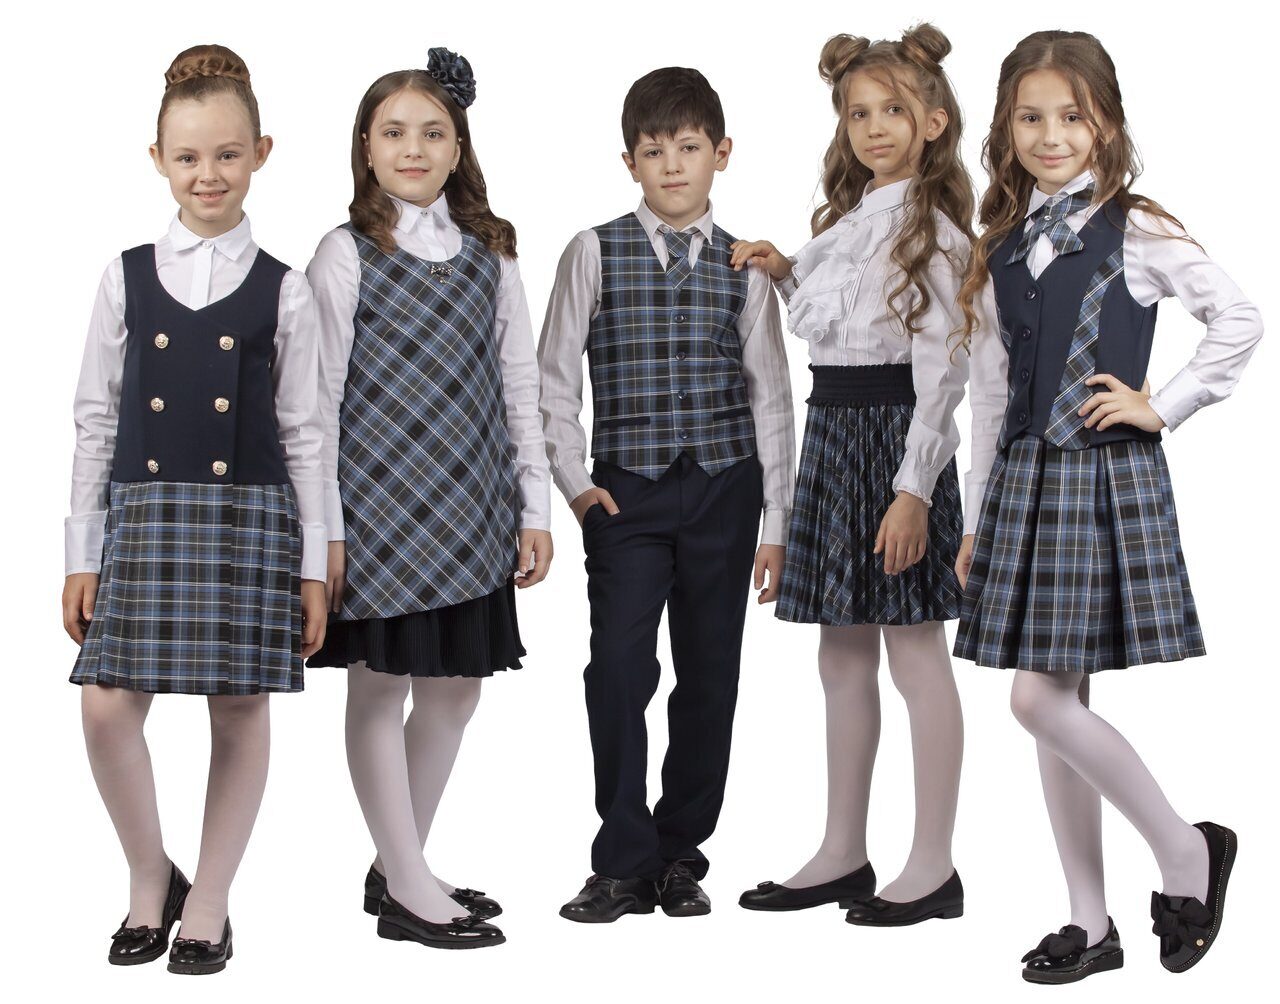 Купить одежду для школы. Школьная форма. Школьная одежда. Форма для школы. Школьная форма коллекция.